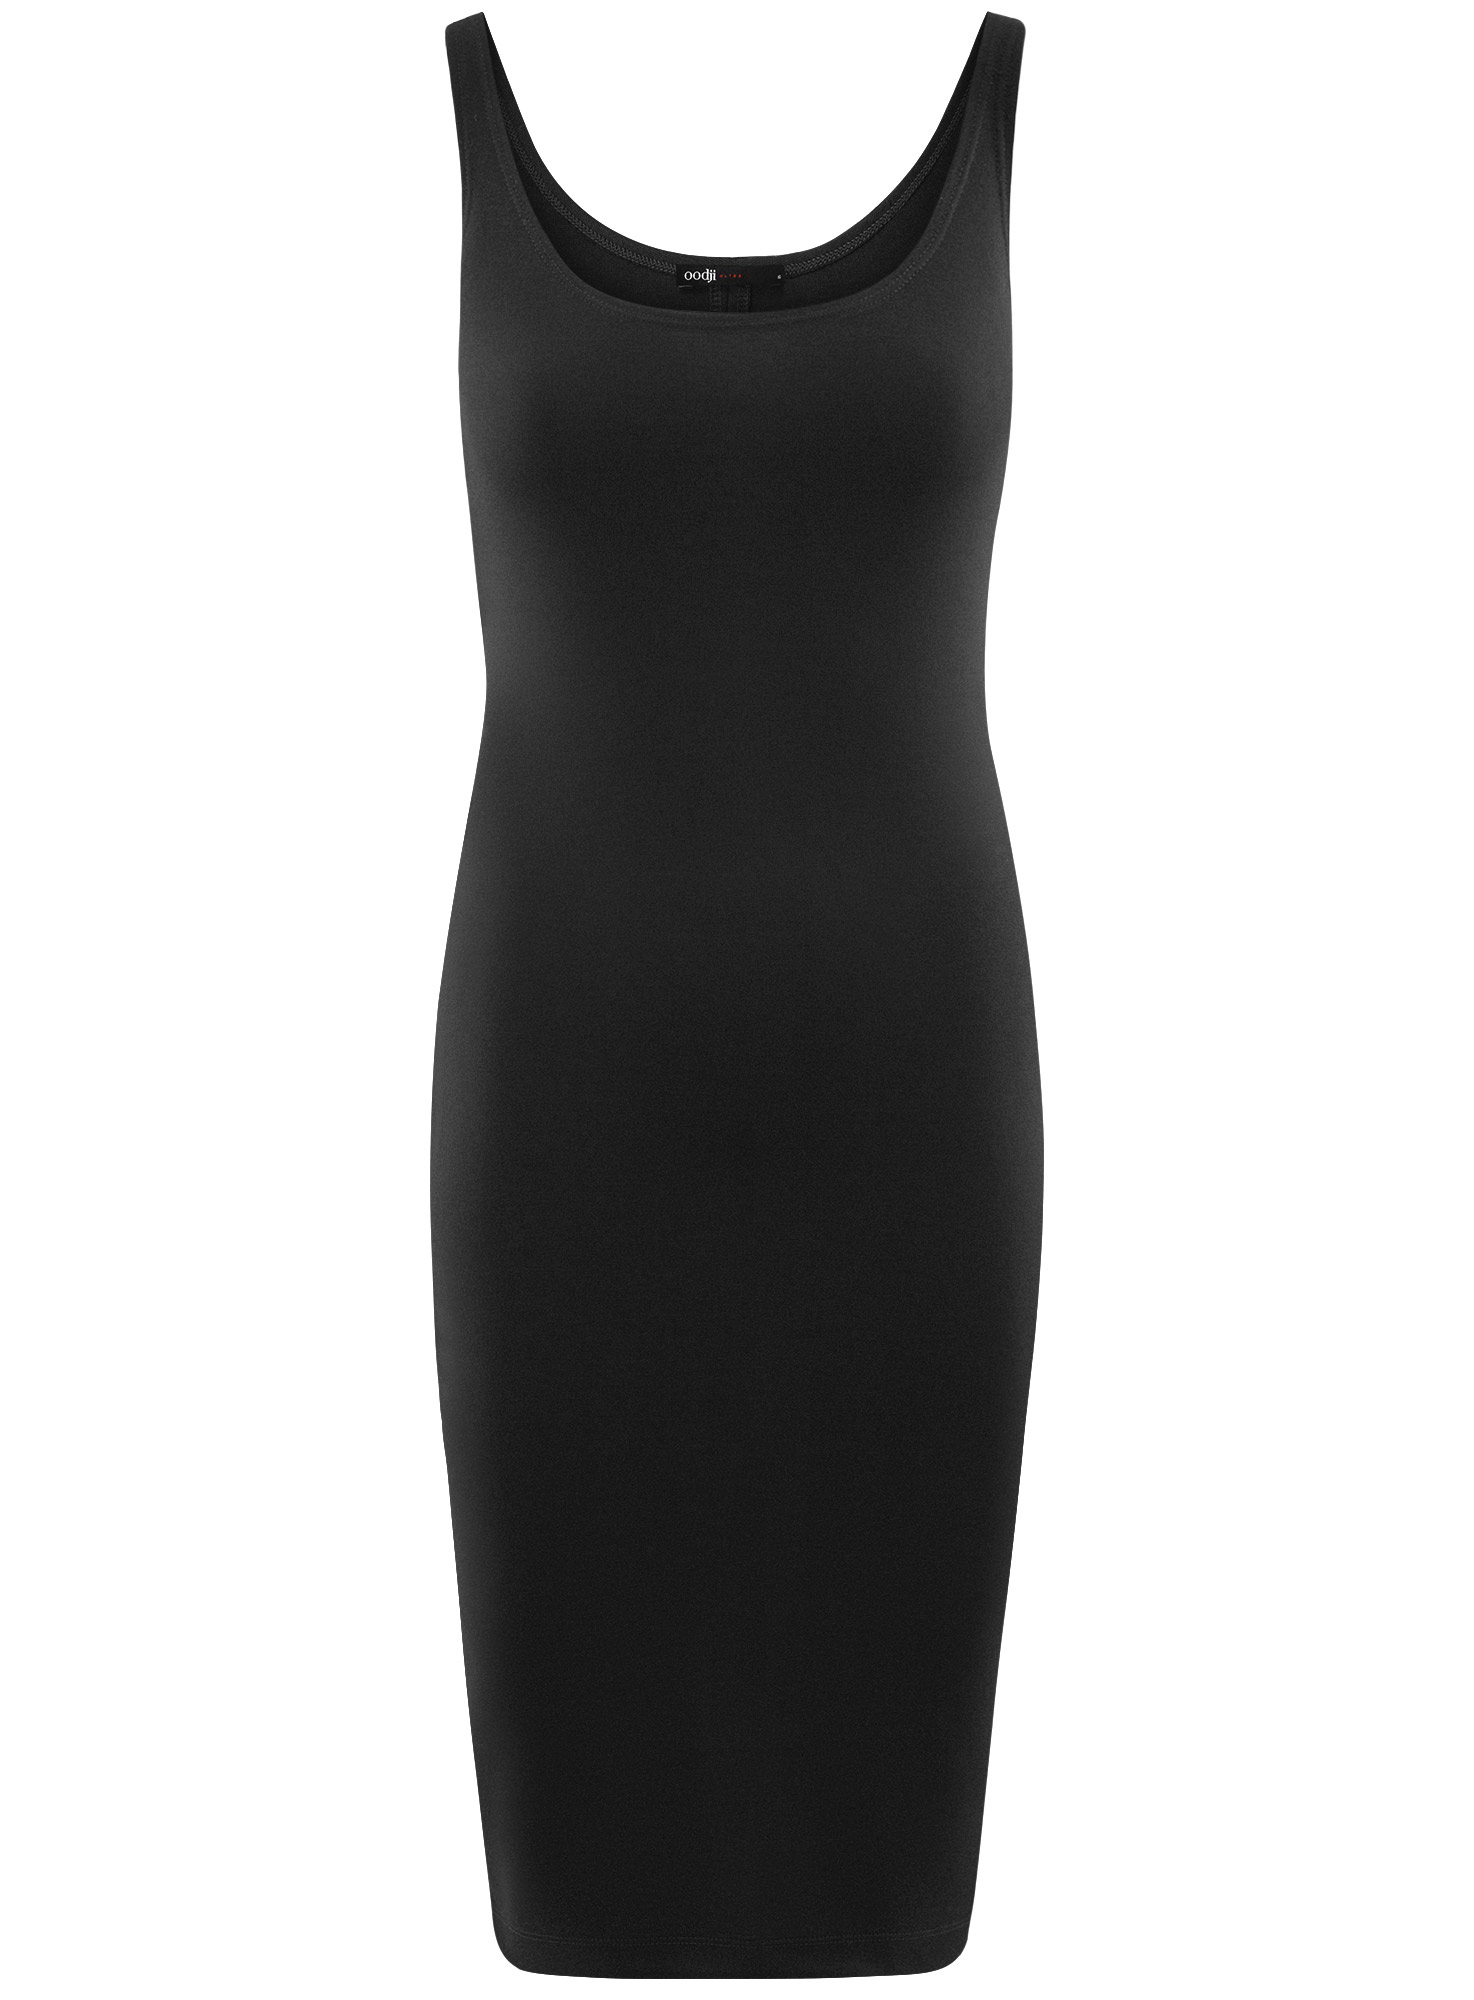 Платье женское oodji 14015007-8B черное XS